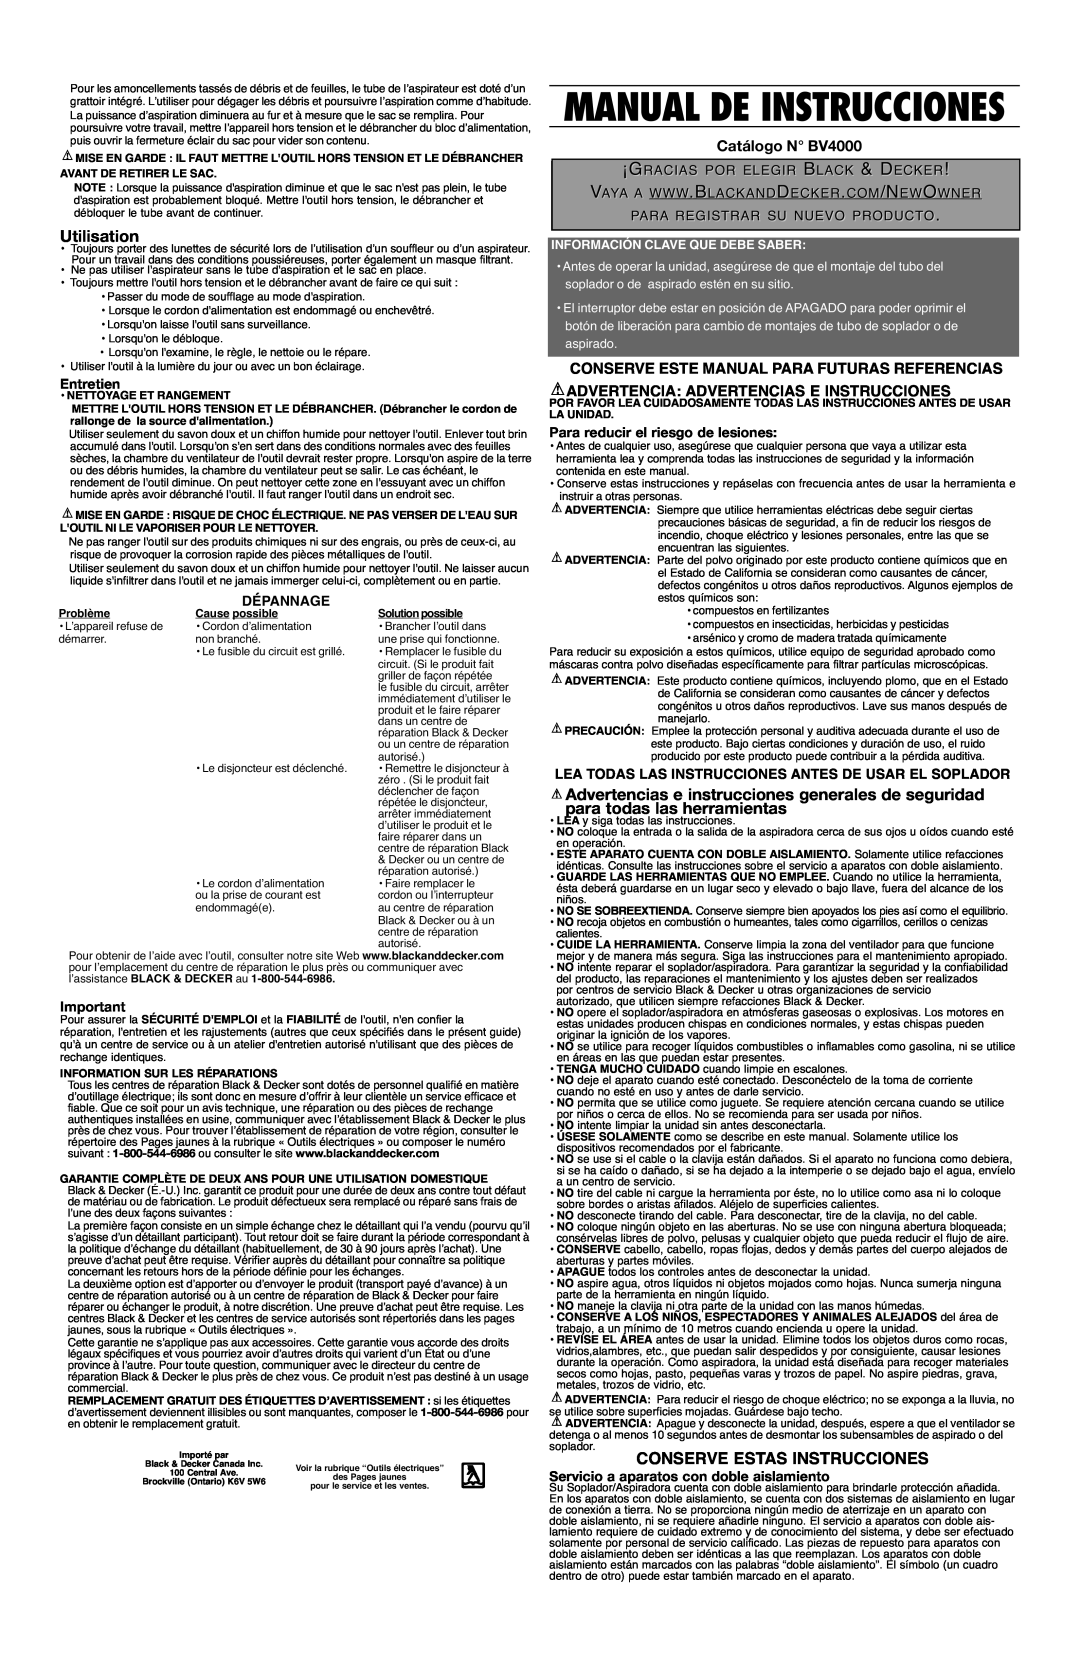 Black & Decker 90517736 Utilisation, Conserve Estas Instrucciones, Catálogo N BV4000, Dépannage, Manual De Instrucciones 